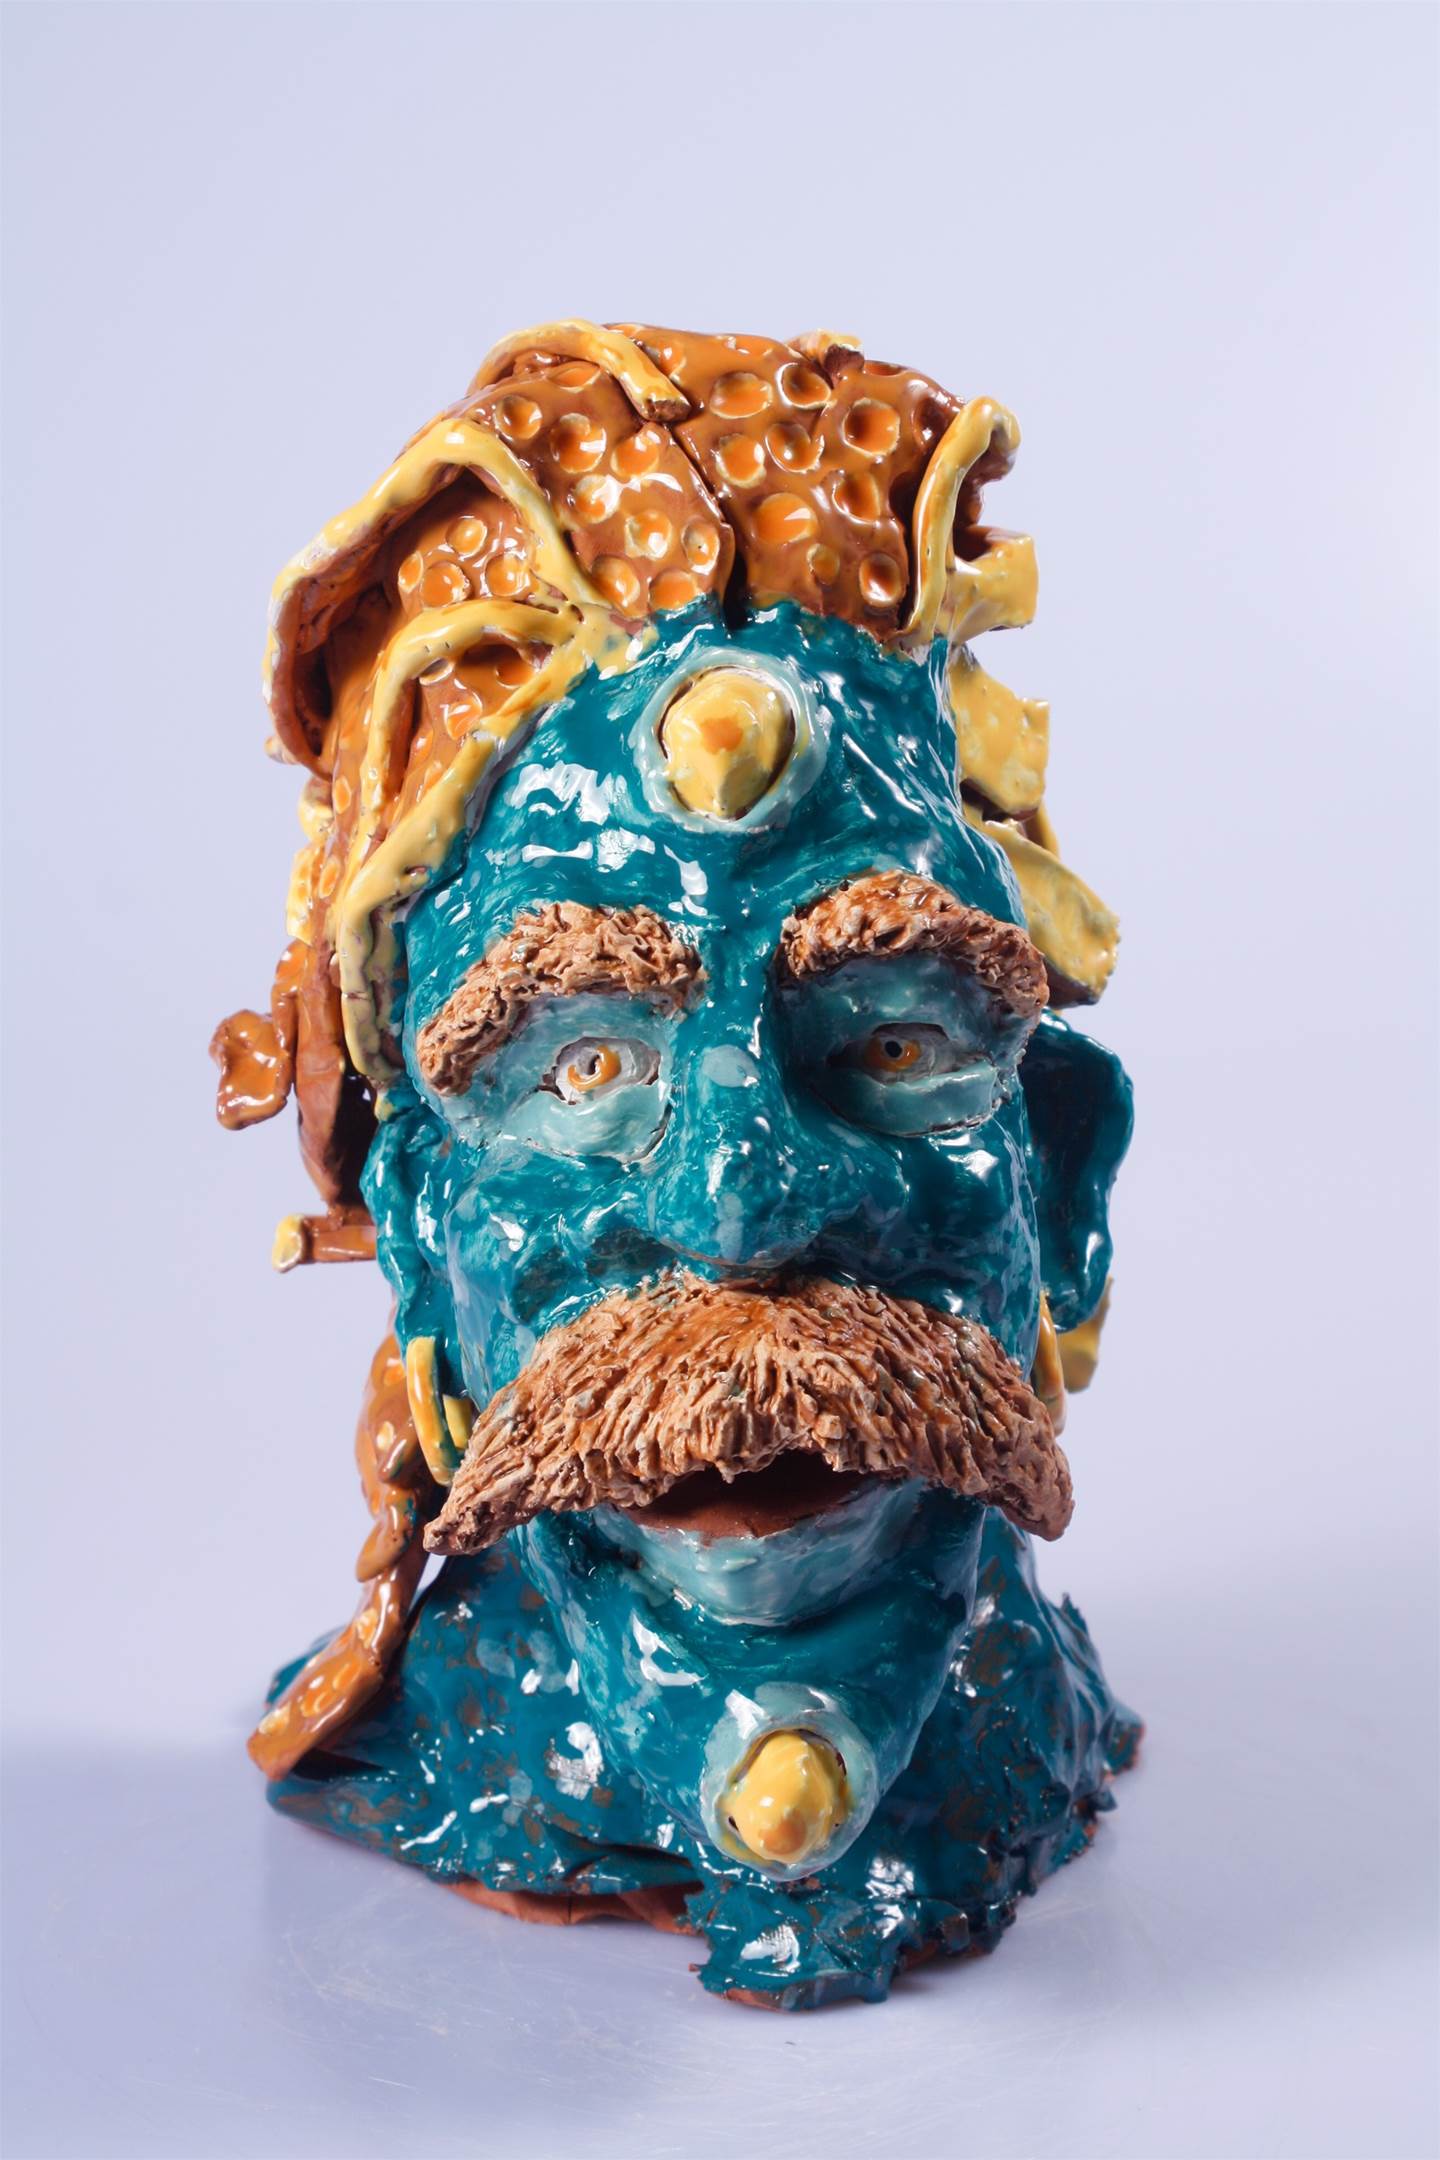 Lupos, original Figure humaine Céramique Sculpture par Coletivo Cobalto